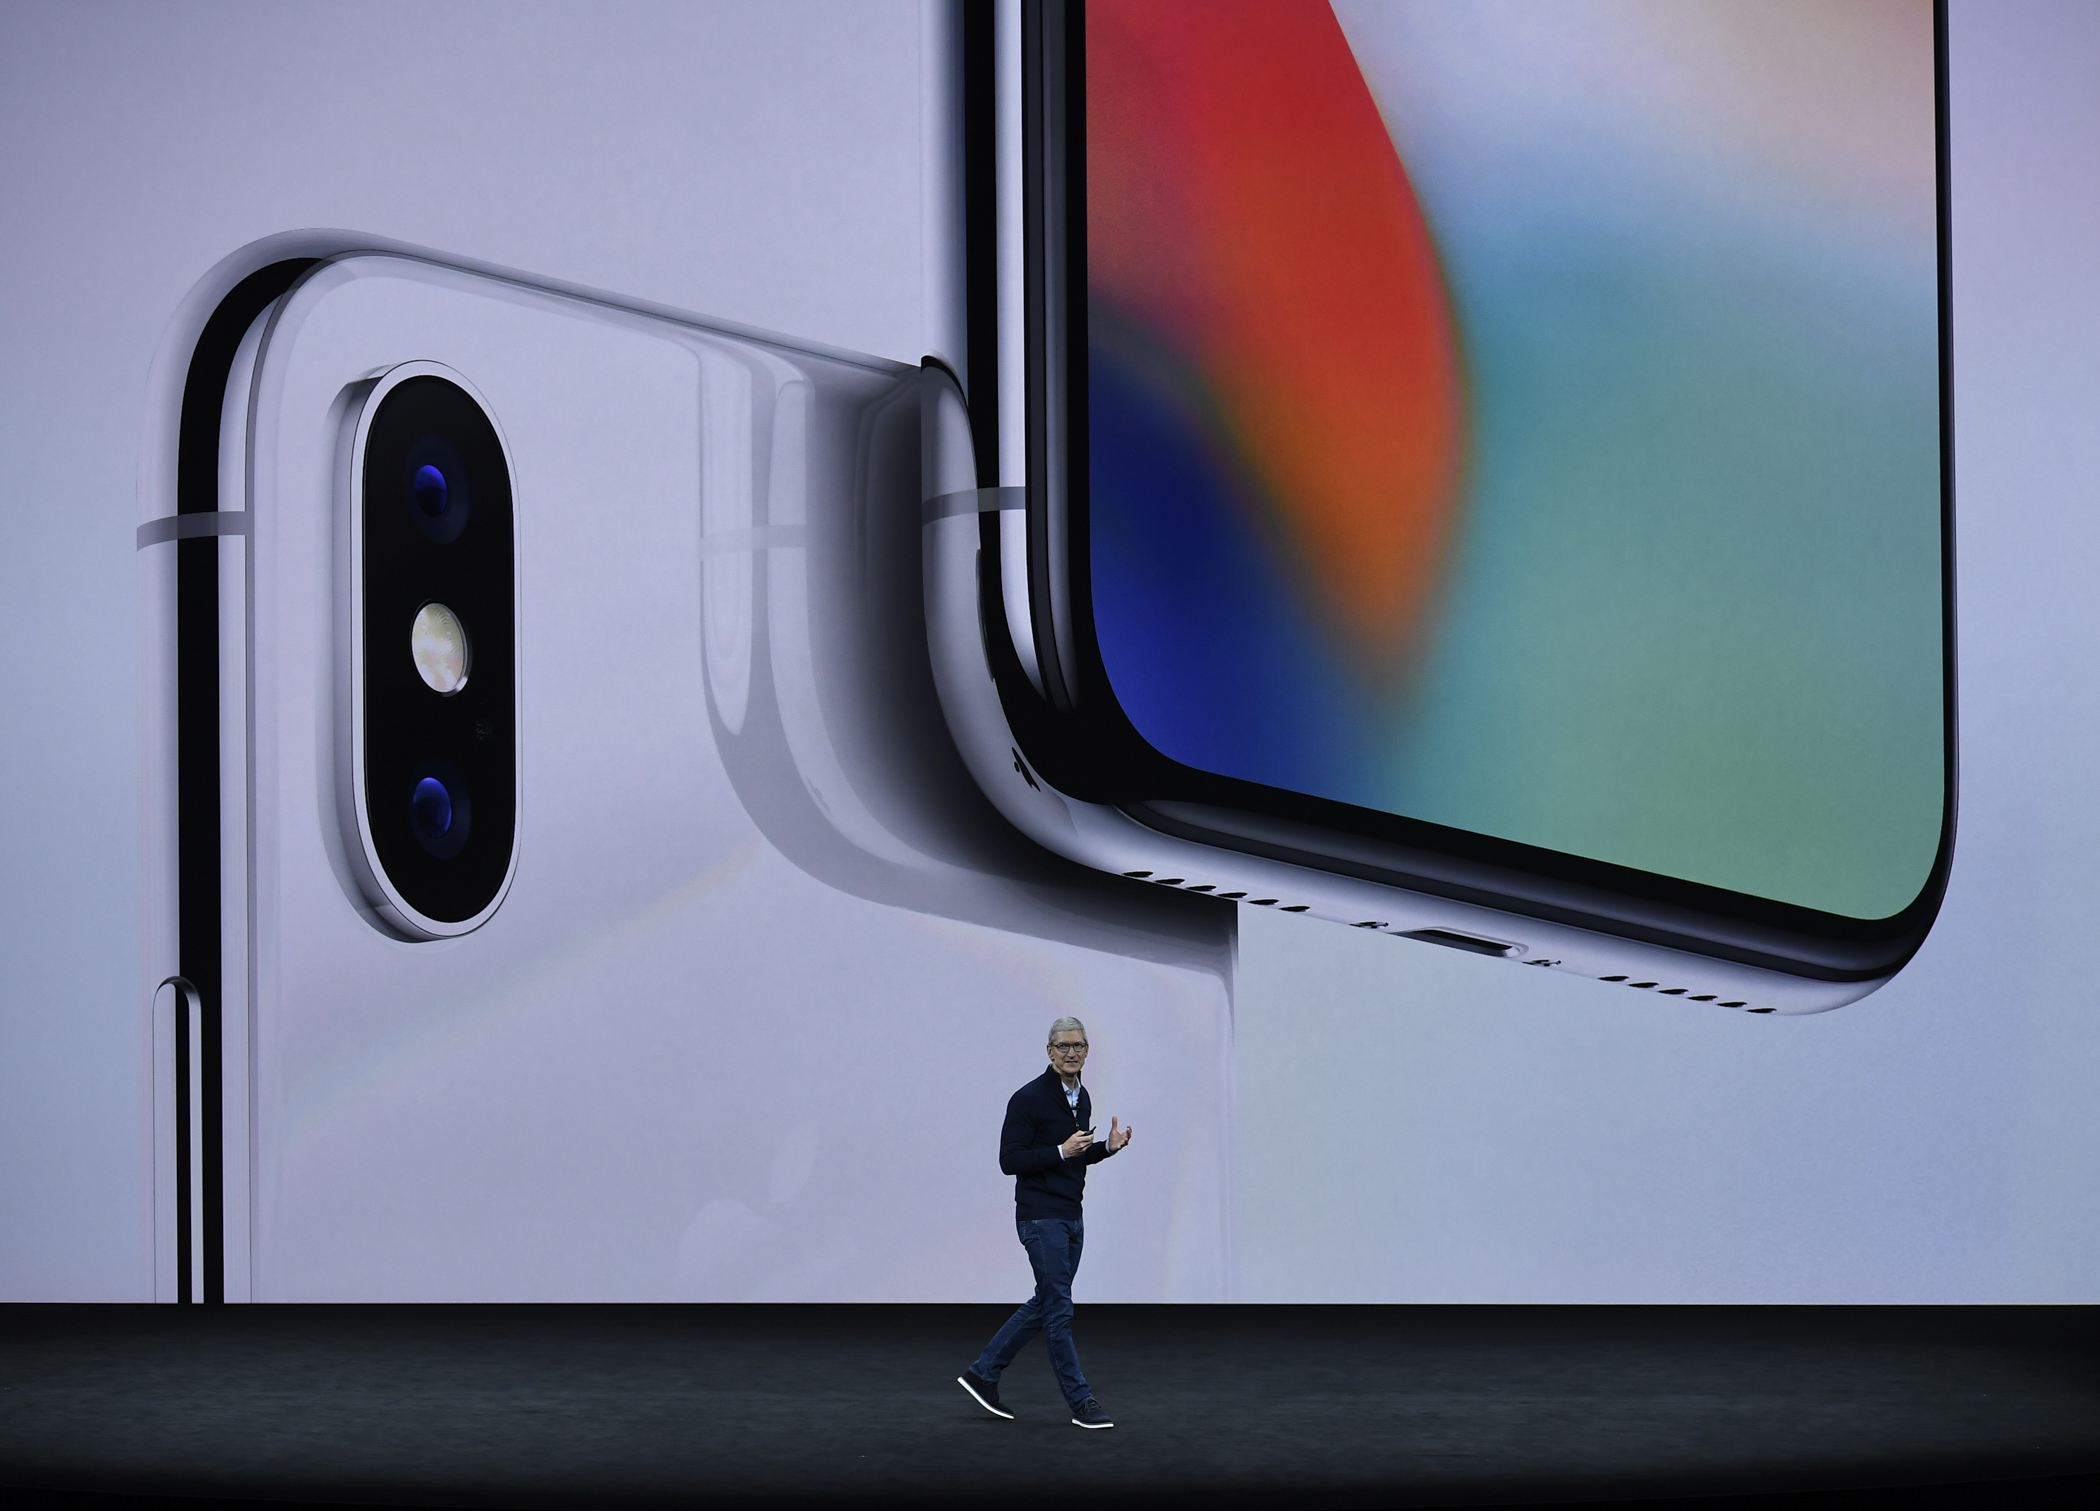 新产品发布会上,苹果公司首席执行官蒂姆·库克介绍新推出的苹果手机